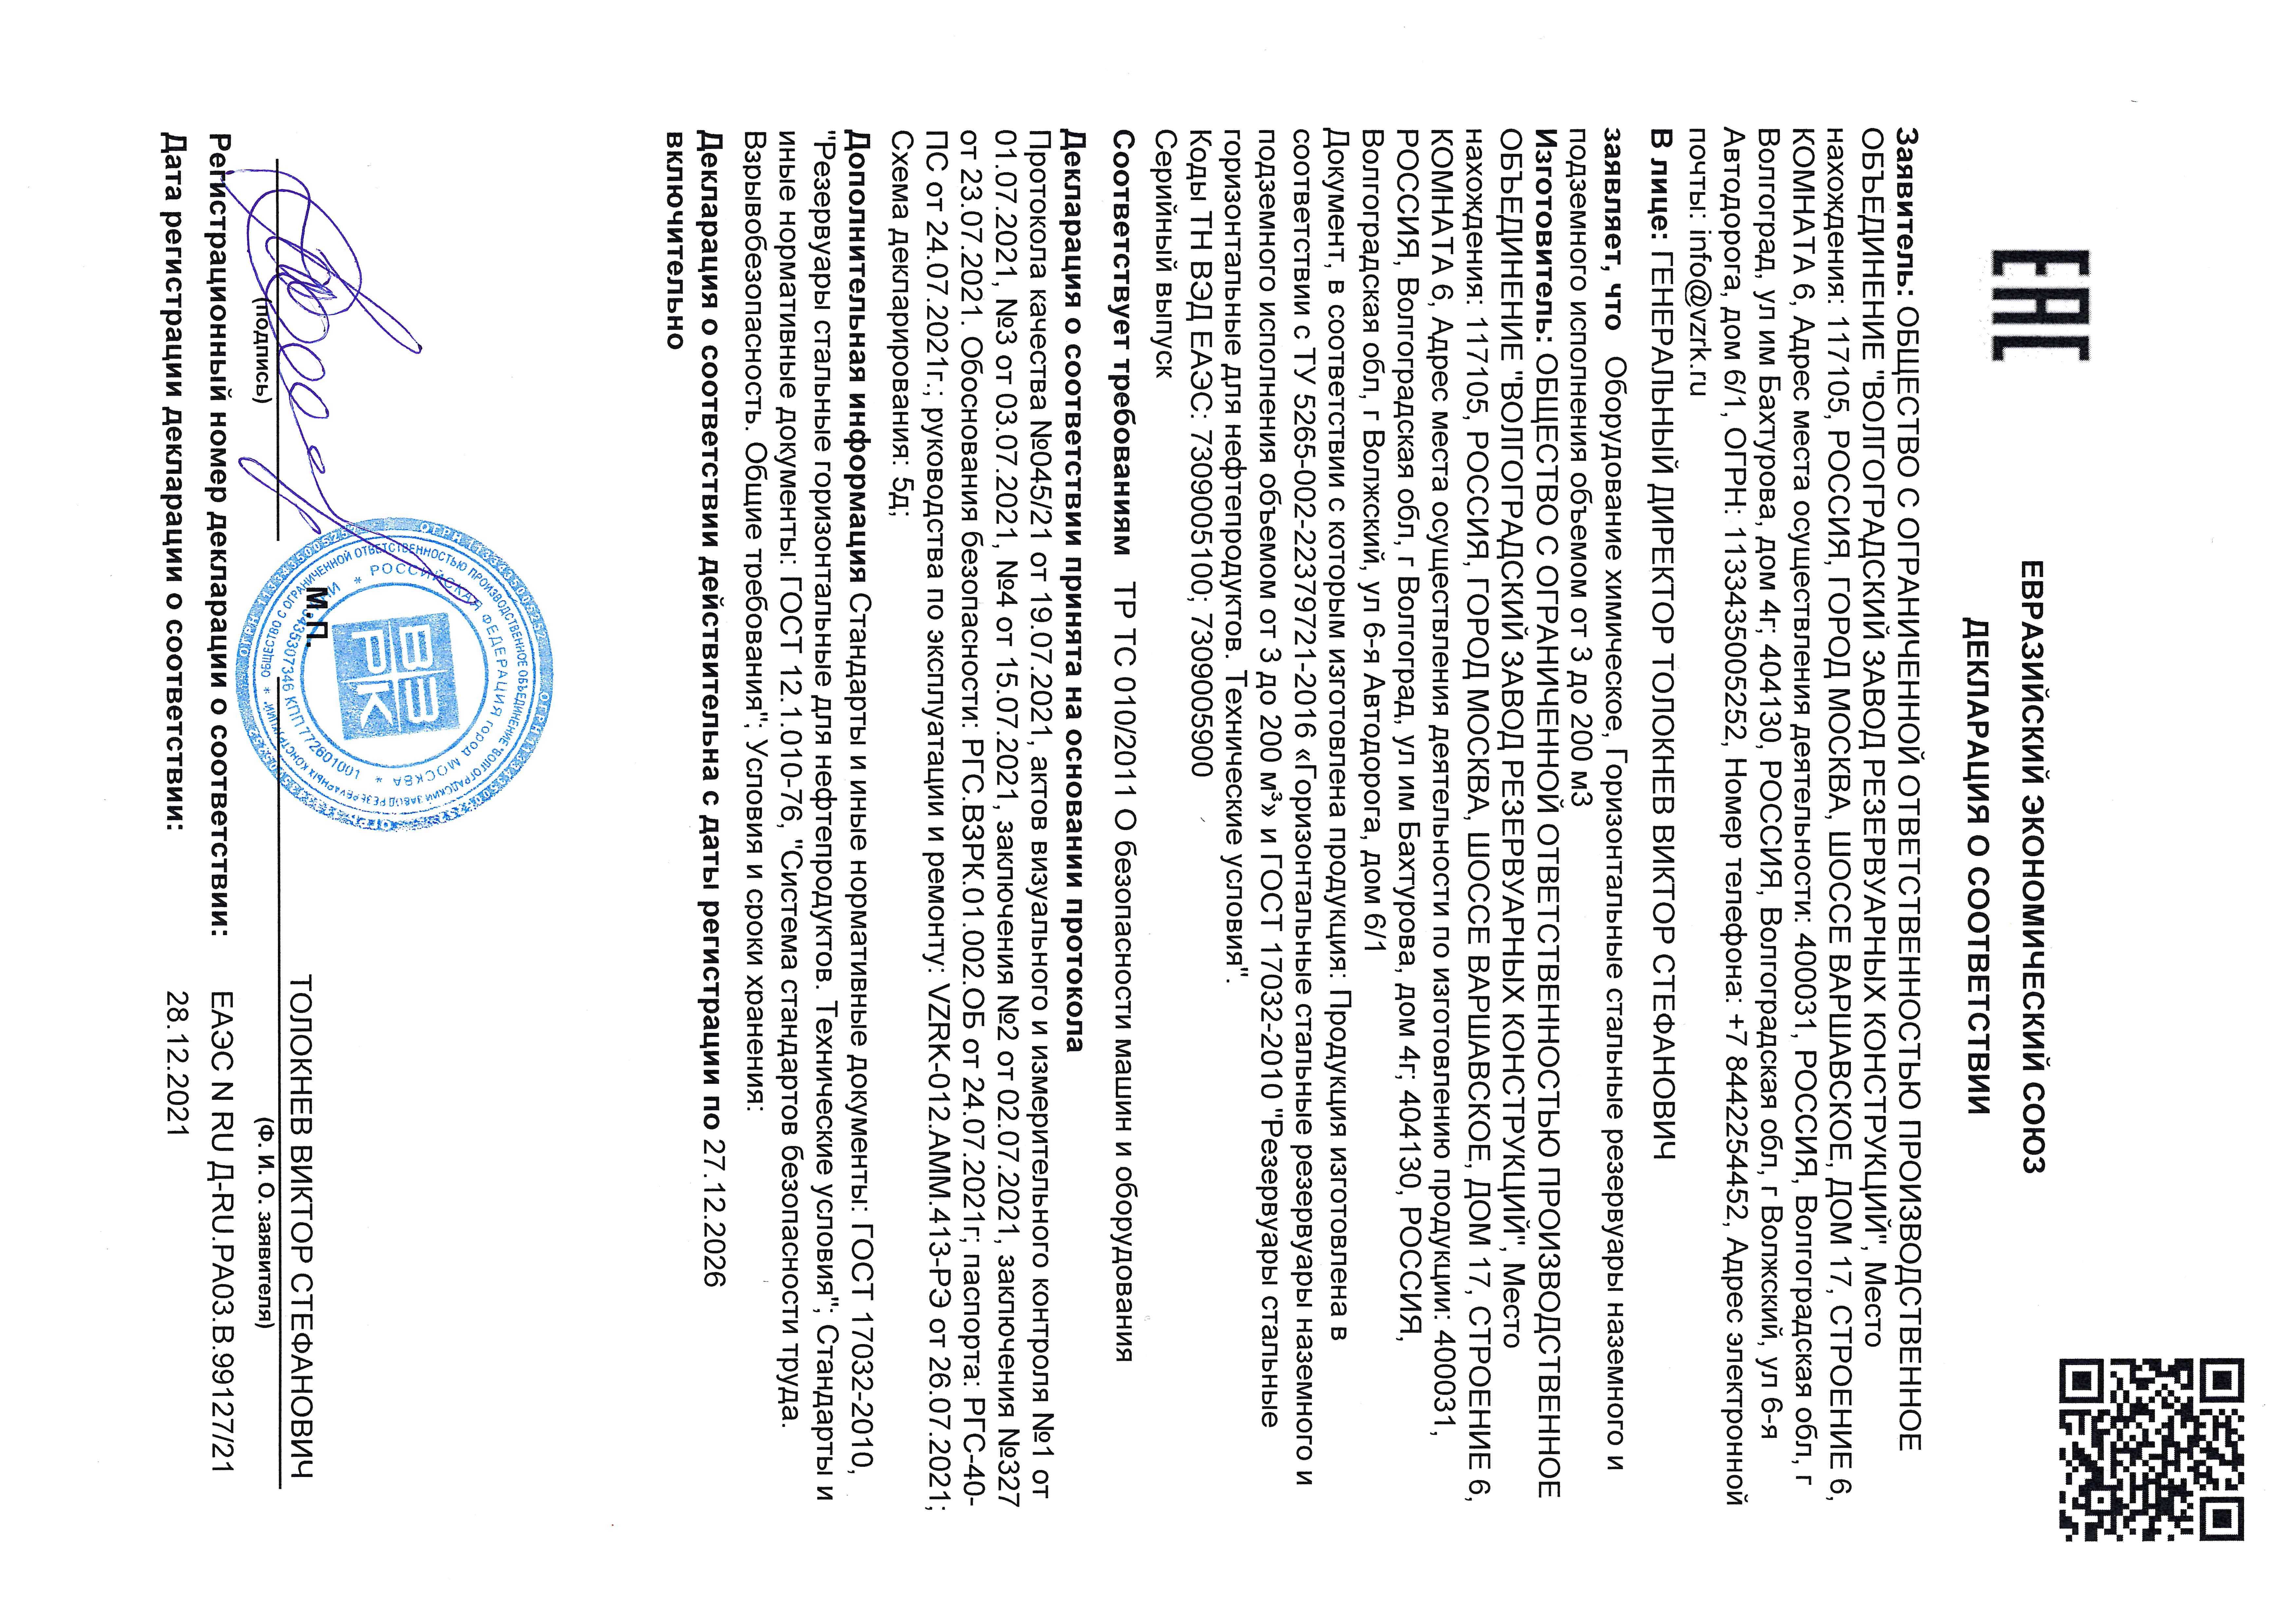 Декларация Евразийского союза (ЕАЭС) о соответствии Резервуаров горизонтальных стальных требованиям технического регламента таможенного союза ТР ТС 010/2011